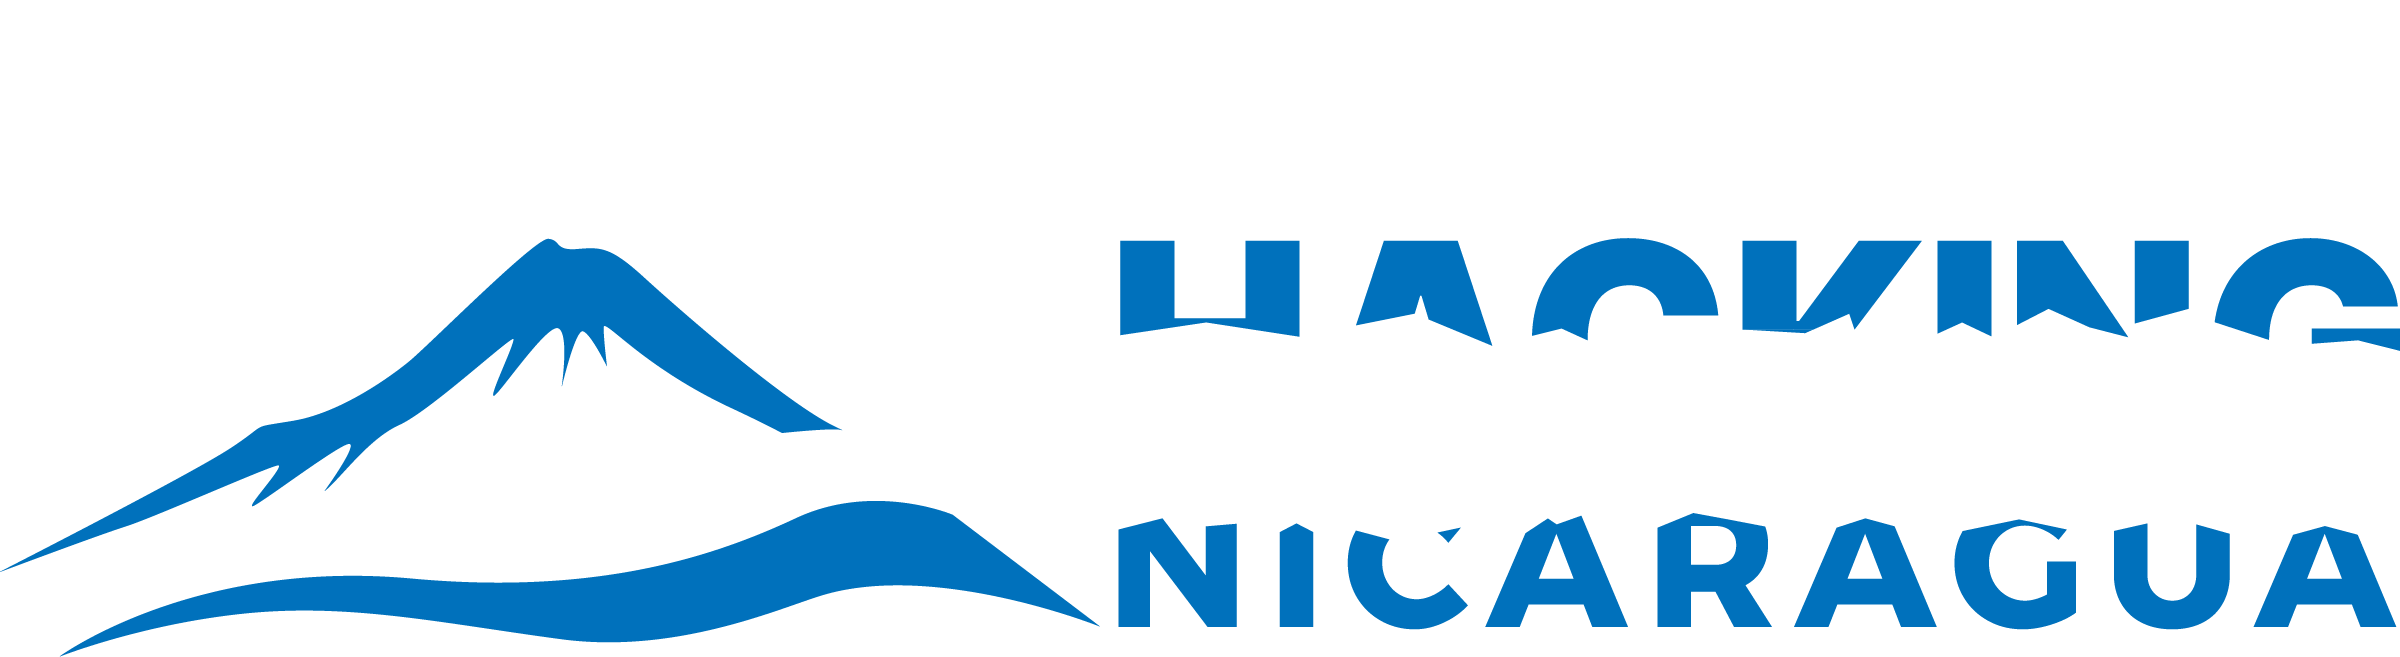 HACKING NICARAGUA